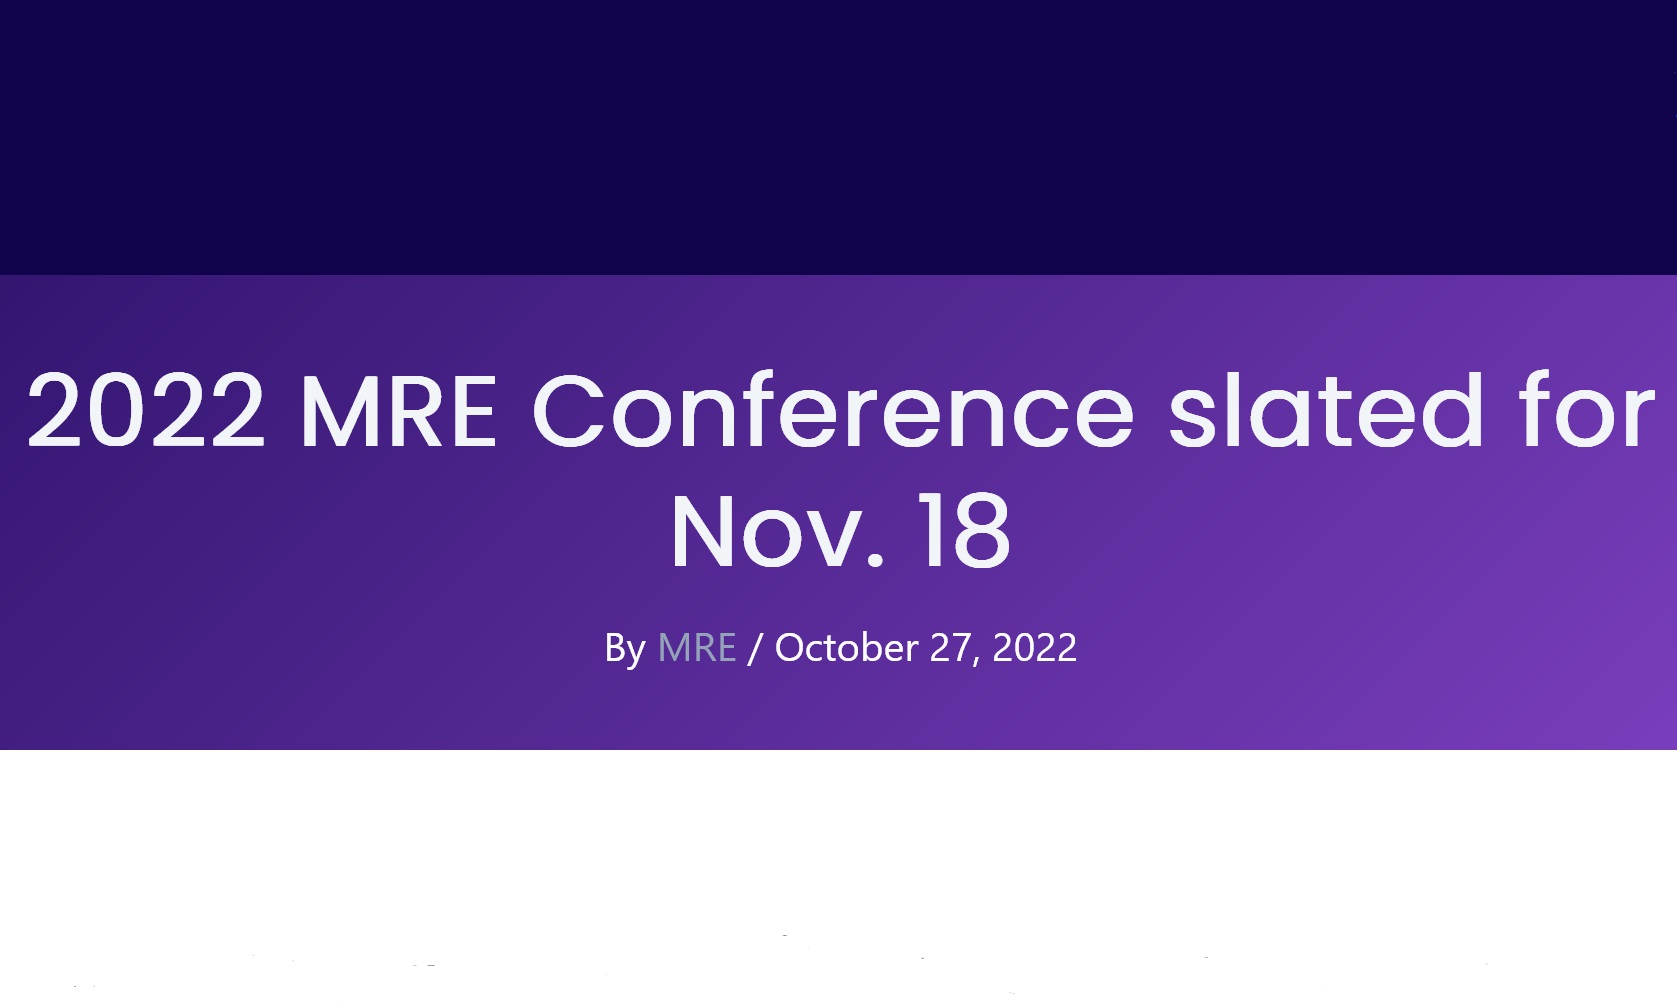 2022 MRE conference slated for nov. 18